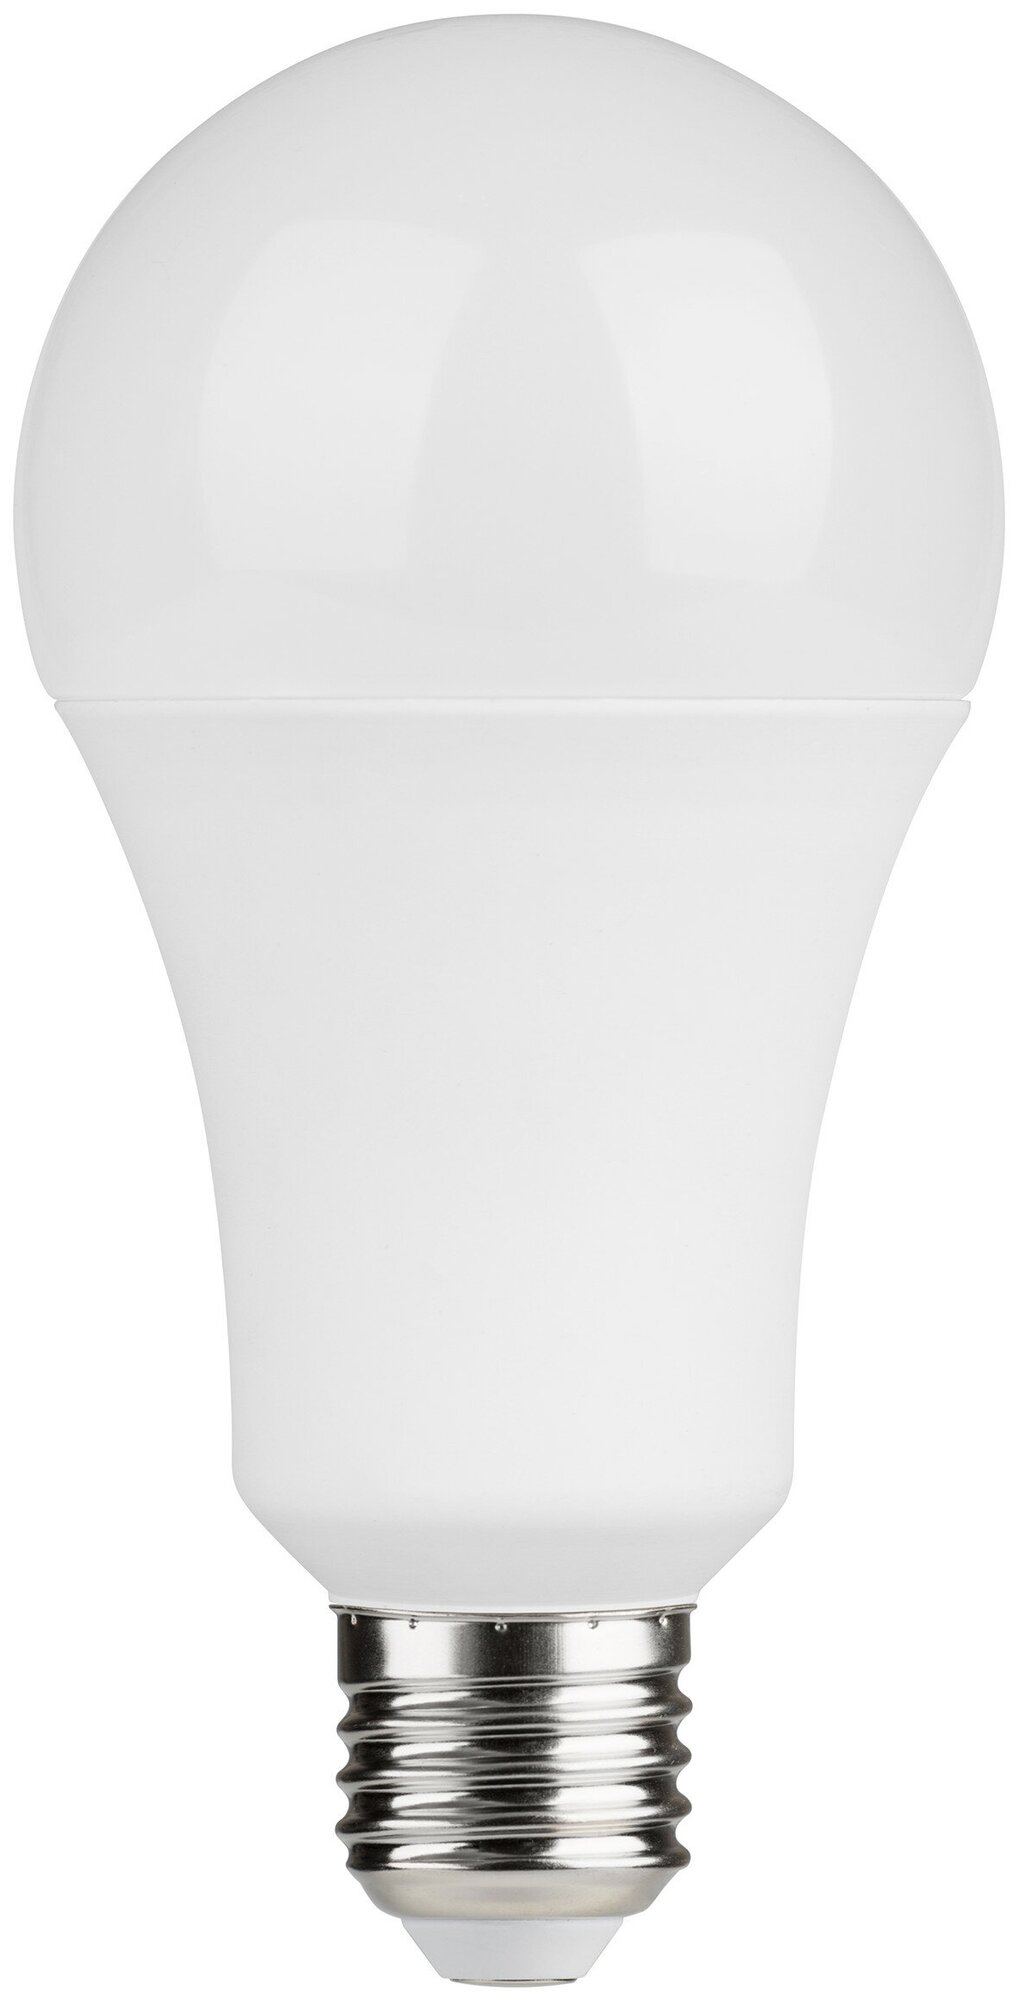 Комплект (6шт) светодиодных ламп Lexman E27 170-240 В 10 Вт груша матовая 1000 лм теплый белый свет